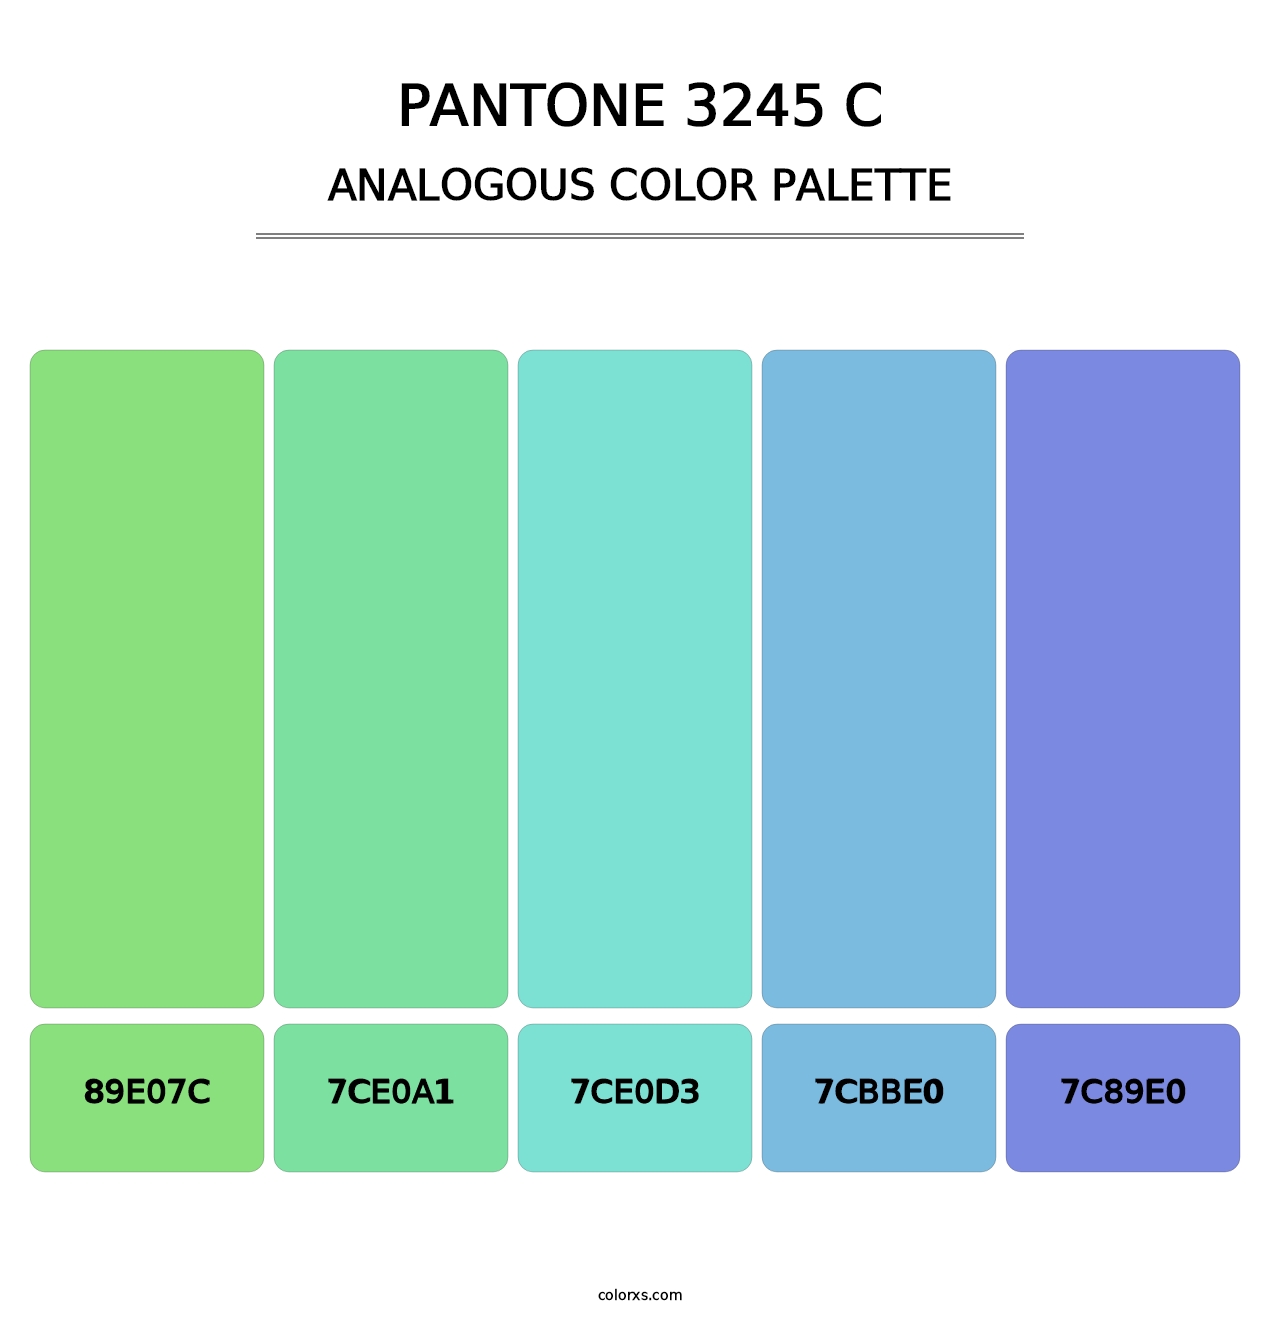 PANTONE 3245 C - Analogous Color Palette